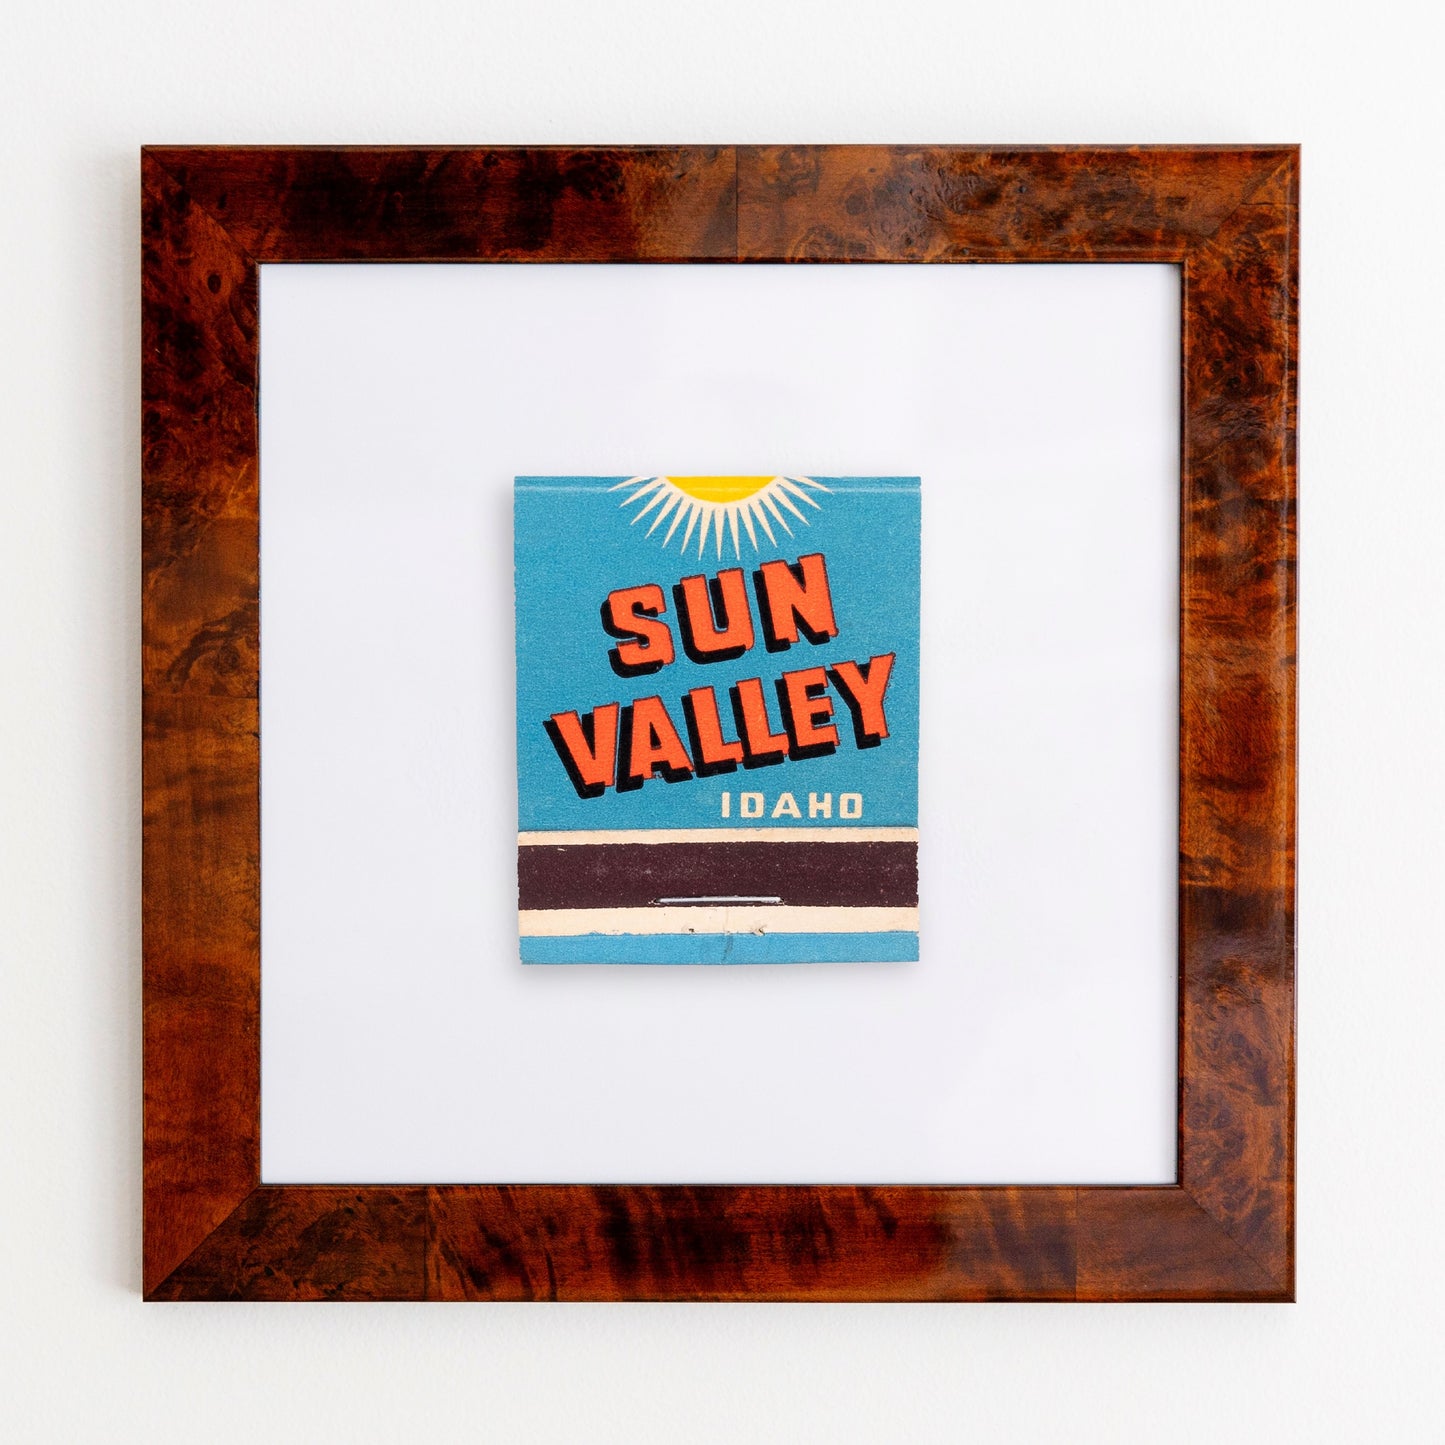 Sun Valley Idaho